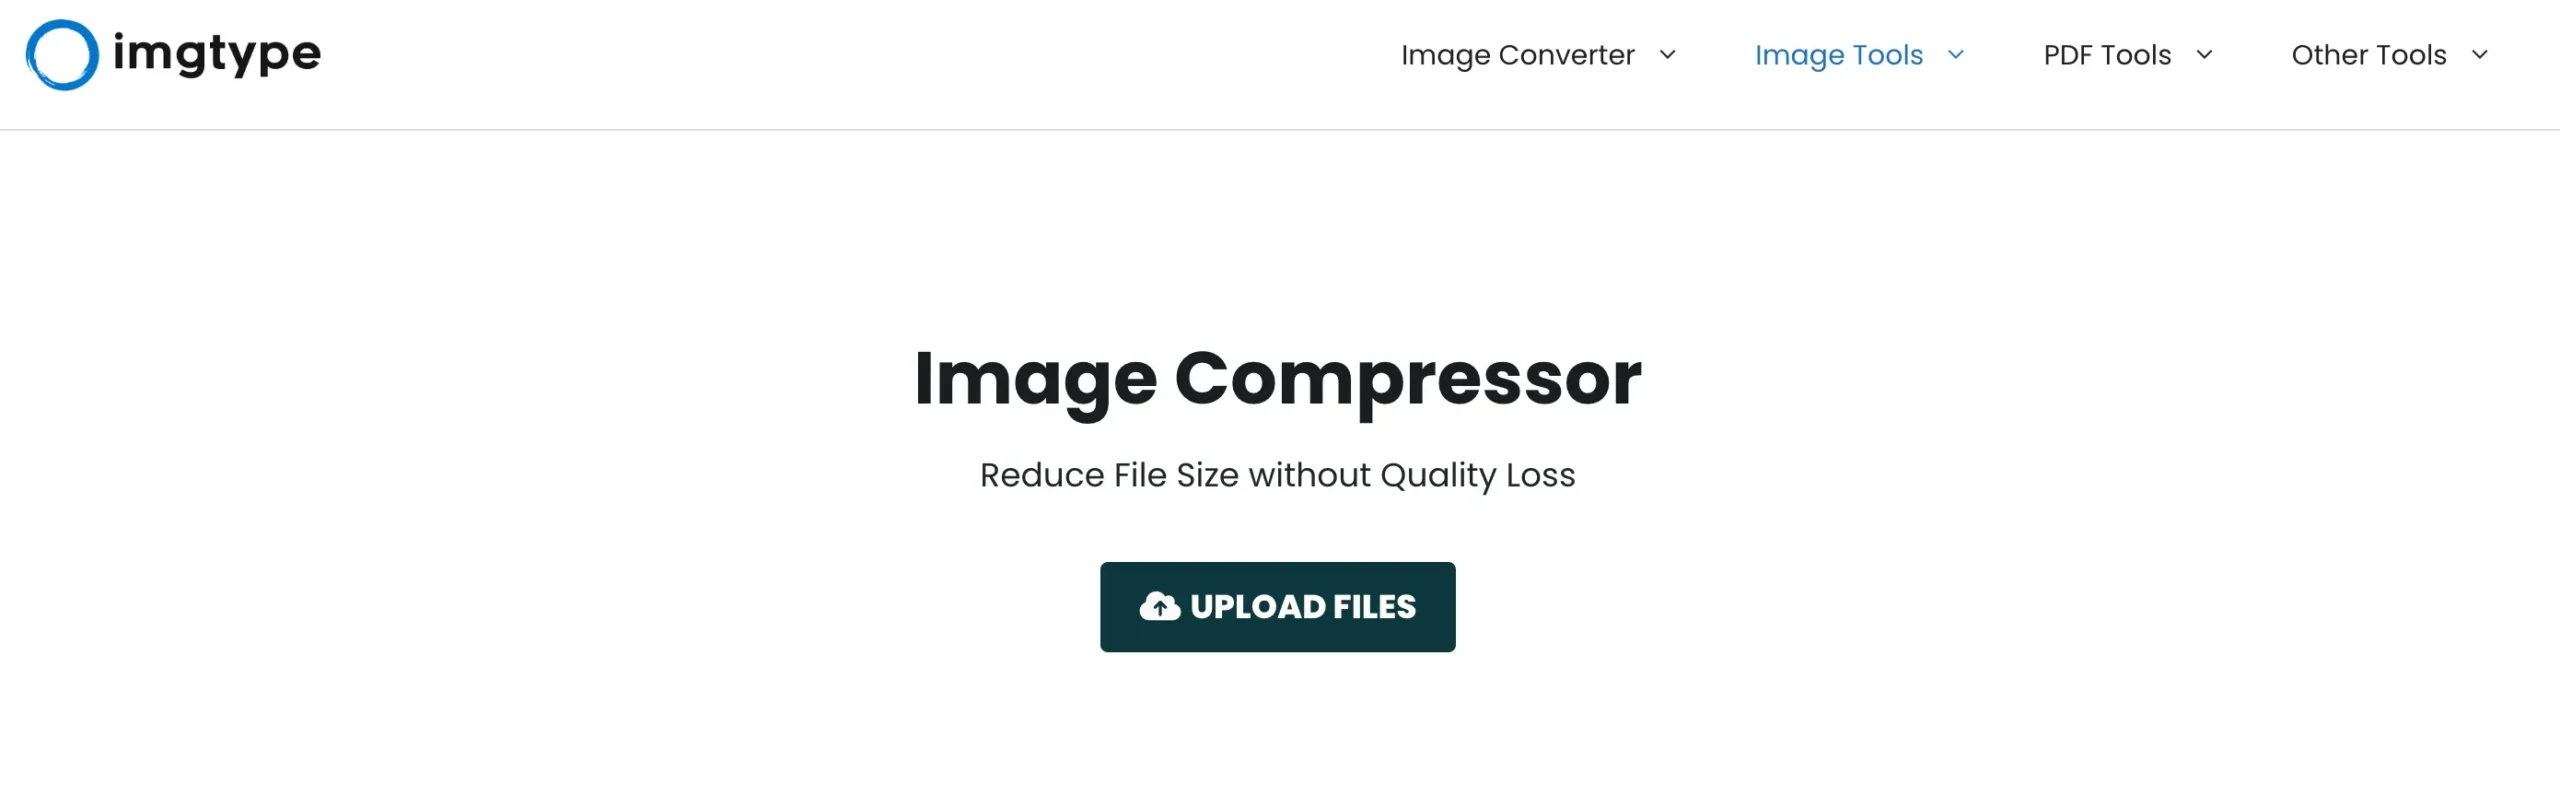 image optimizer tools